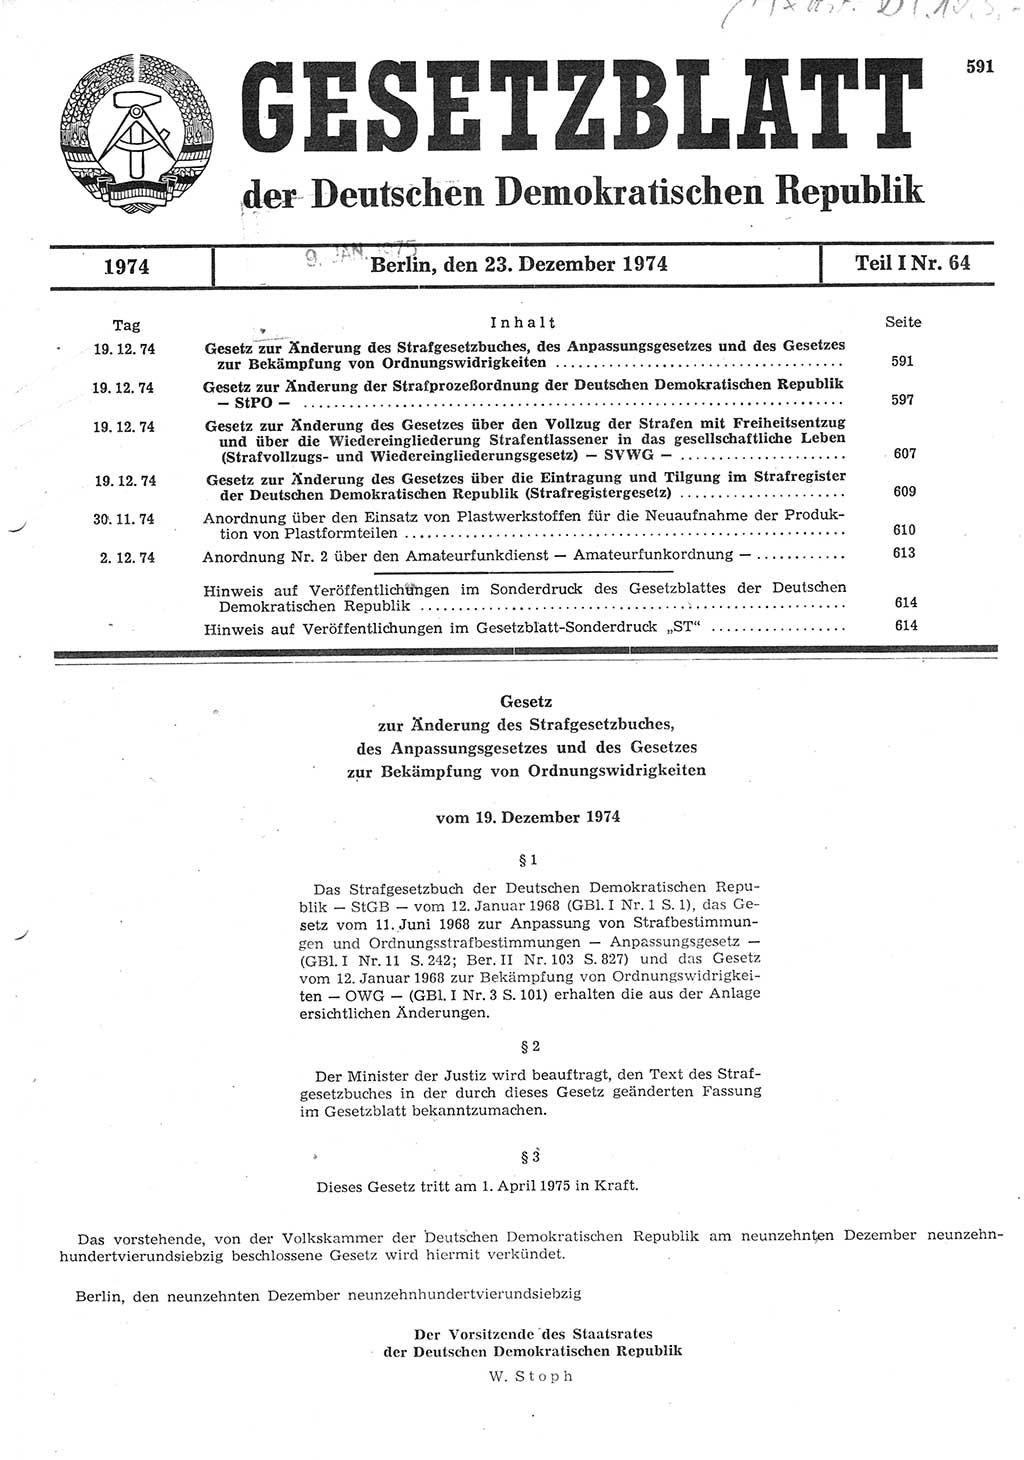 Gesetzblatt (GBl.) der Deutschen Demokratischen Republik (DDR) Teil Ⅰ 1974, Seite 591 (GBl. DDR Ⅰ 1974, S. 591)